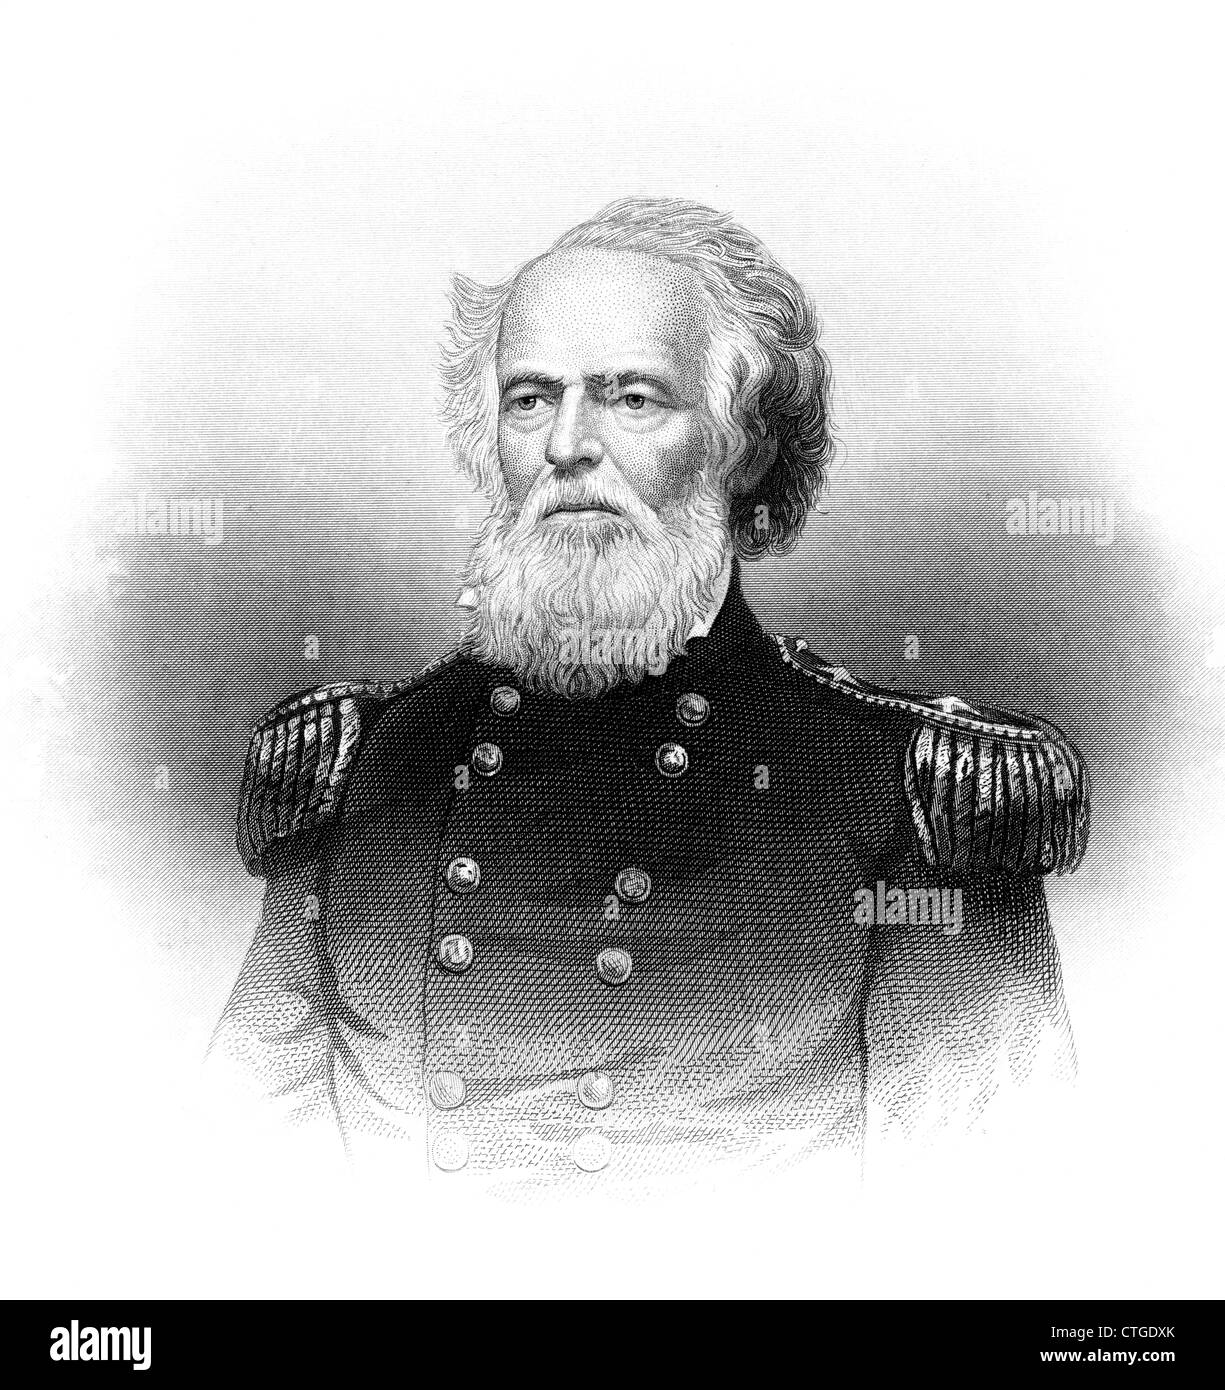 1800s 1860s PORTRAIT JOSEPH K MANSFIELD le général de brigade armée de l'Union a été tué le 18 septembre 1862 BATAILLE D'ANTIETAM Banque D'Images